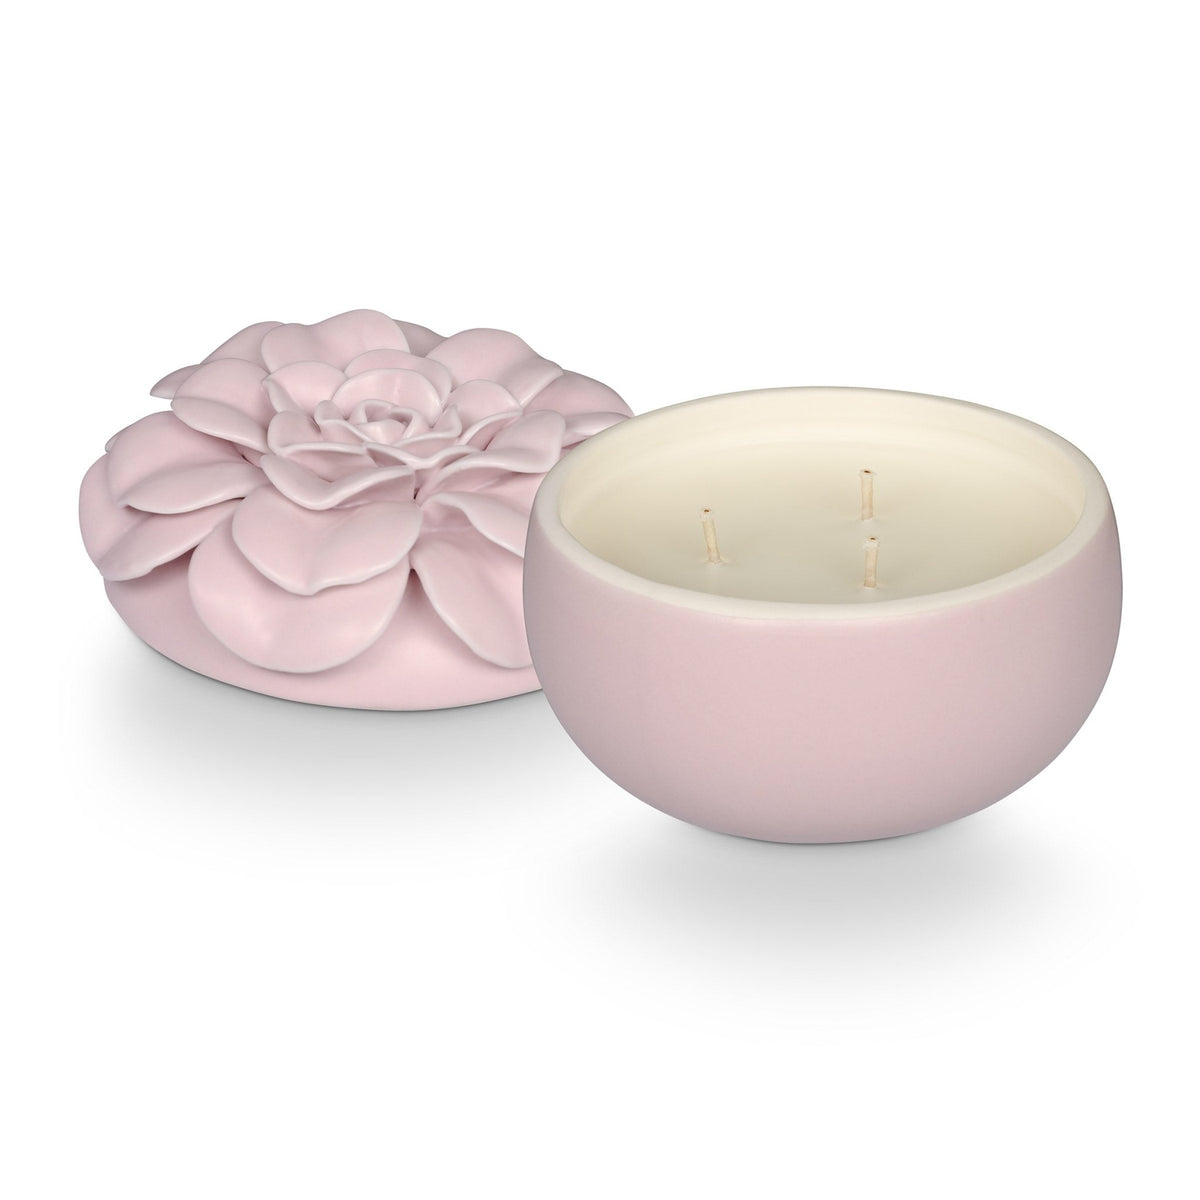 Lavender La La Ceramic Flower Candle– Illume Candles